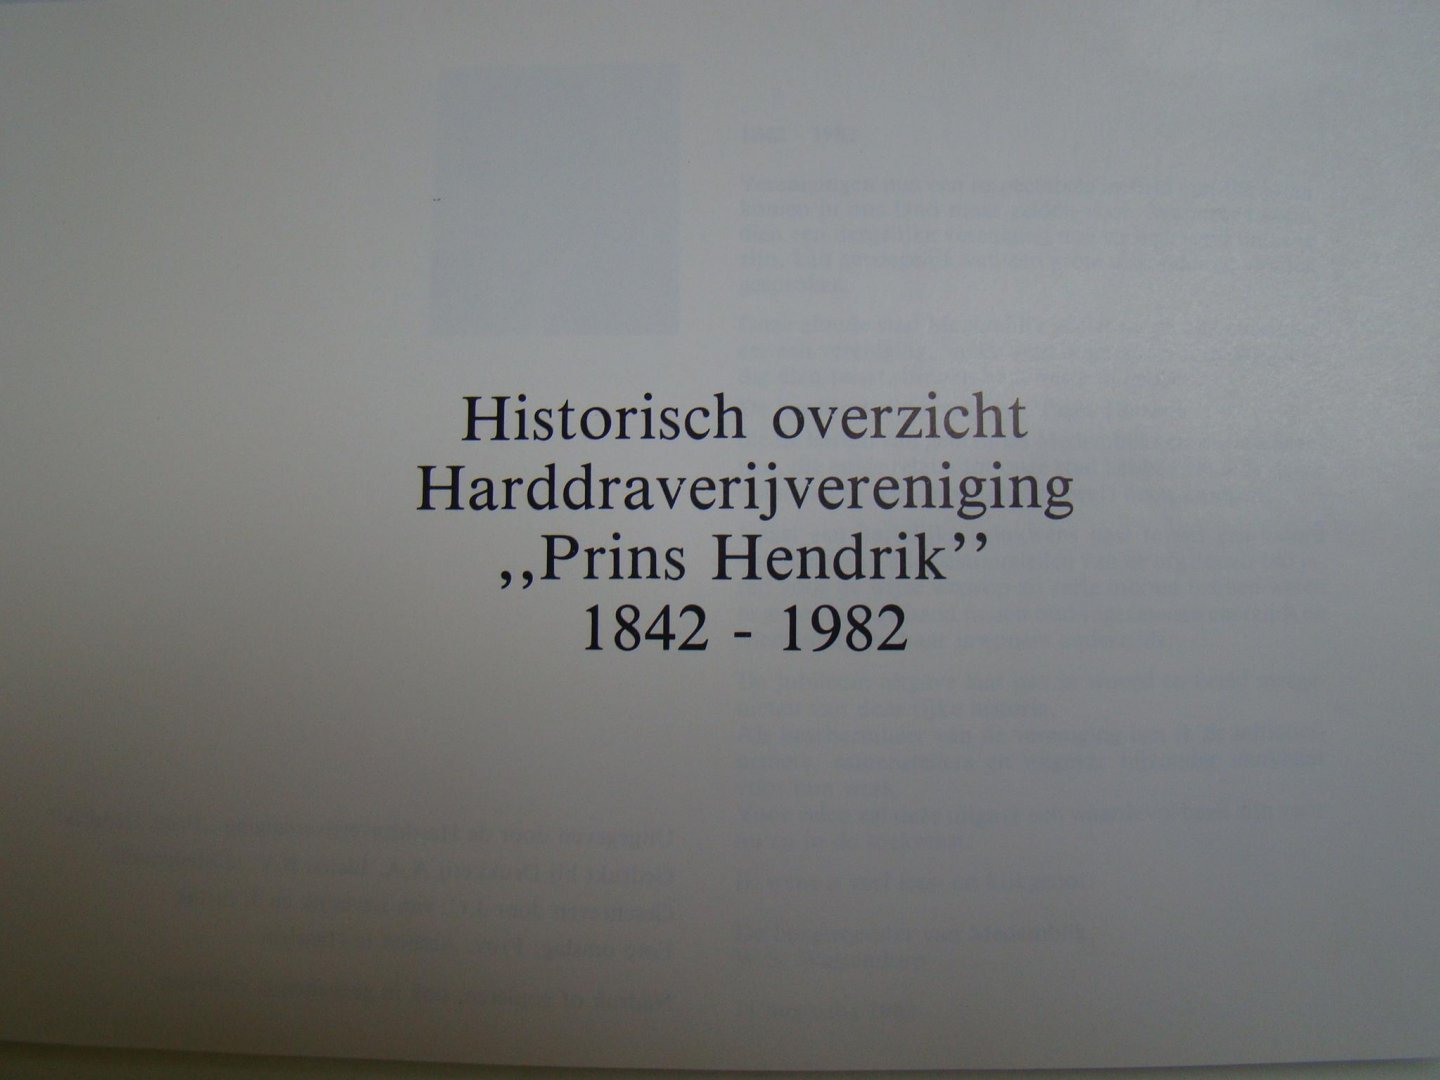 Leverink, J.C. van en Struik, J. - Historische overzicht Harddravverijvereniging Prins Hendrik